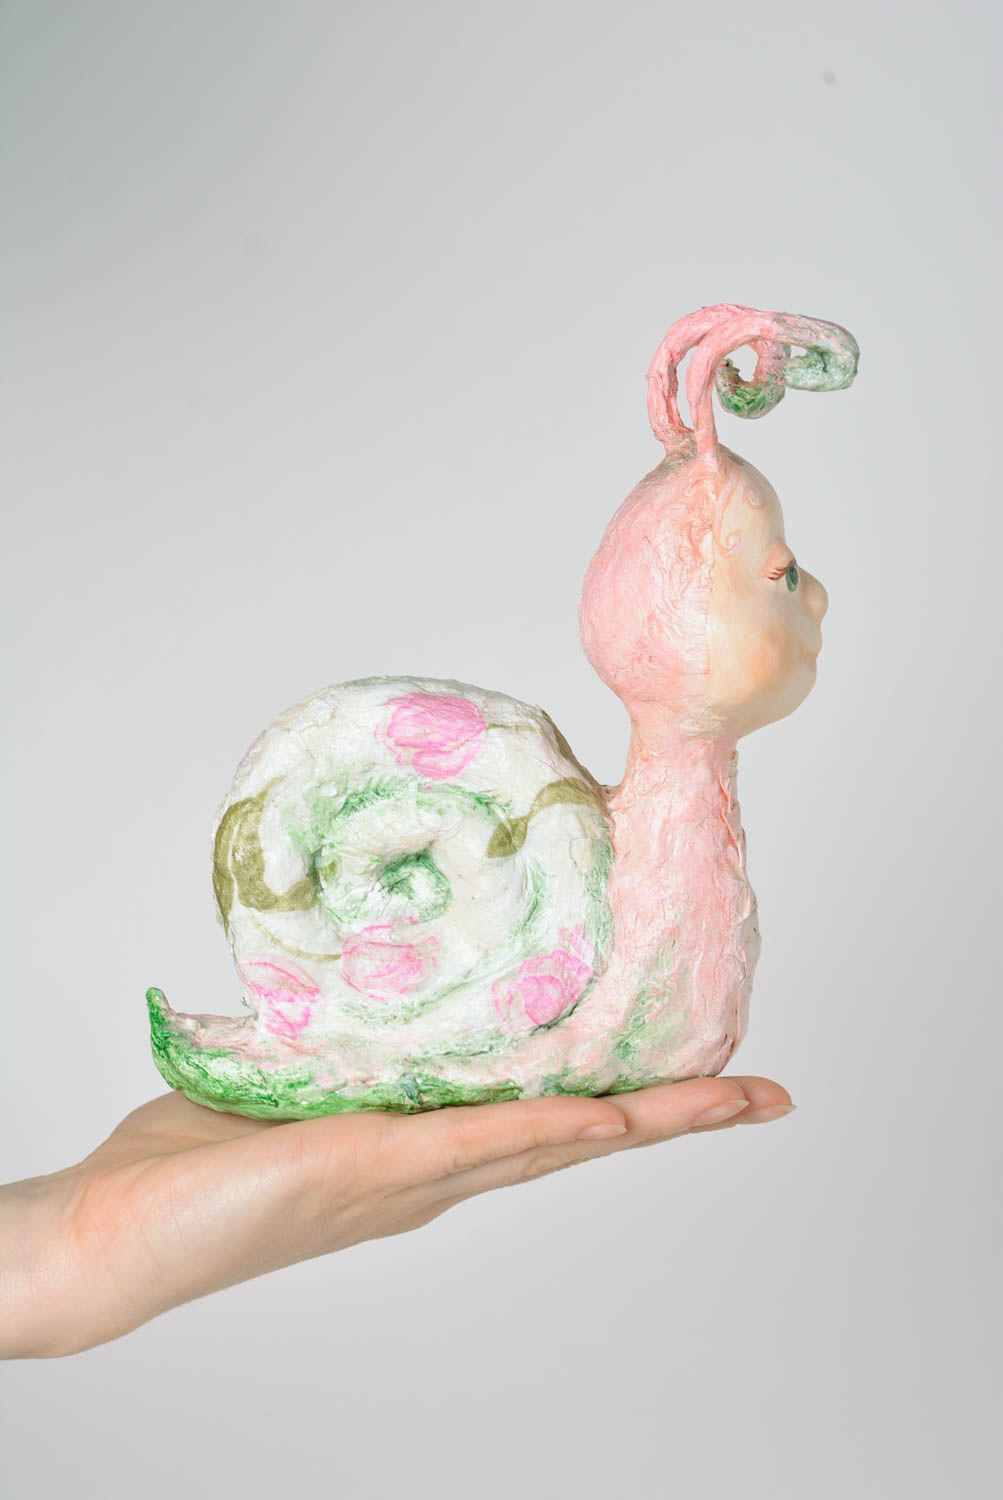 Статуэтка из папье-маше интерьерная игрушка в виде улиточки ручной работы фото 4